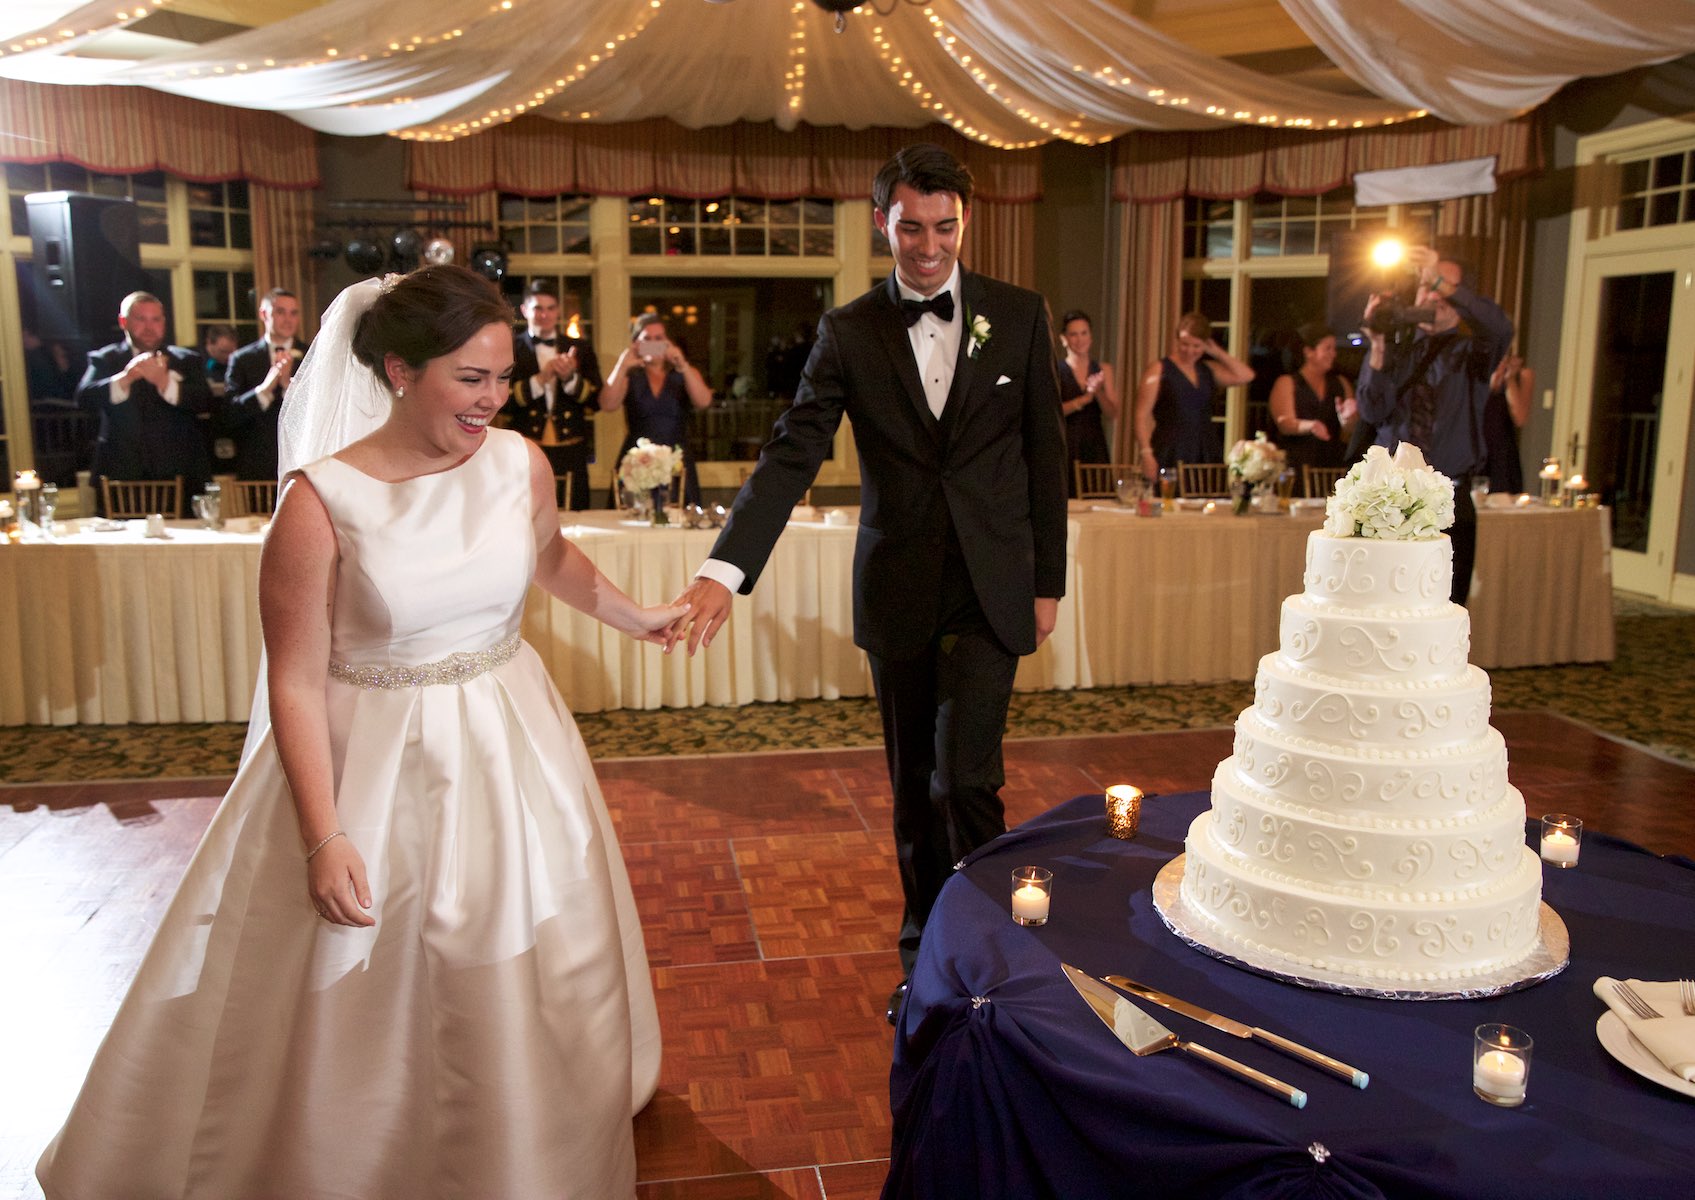 Elizabeth & Daniel move to cut wedding cake, wedding reception at Crystal Tree Country Club, Orland Park. Wedding photography by Steve & Tiffany Warmowski